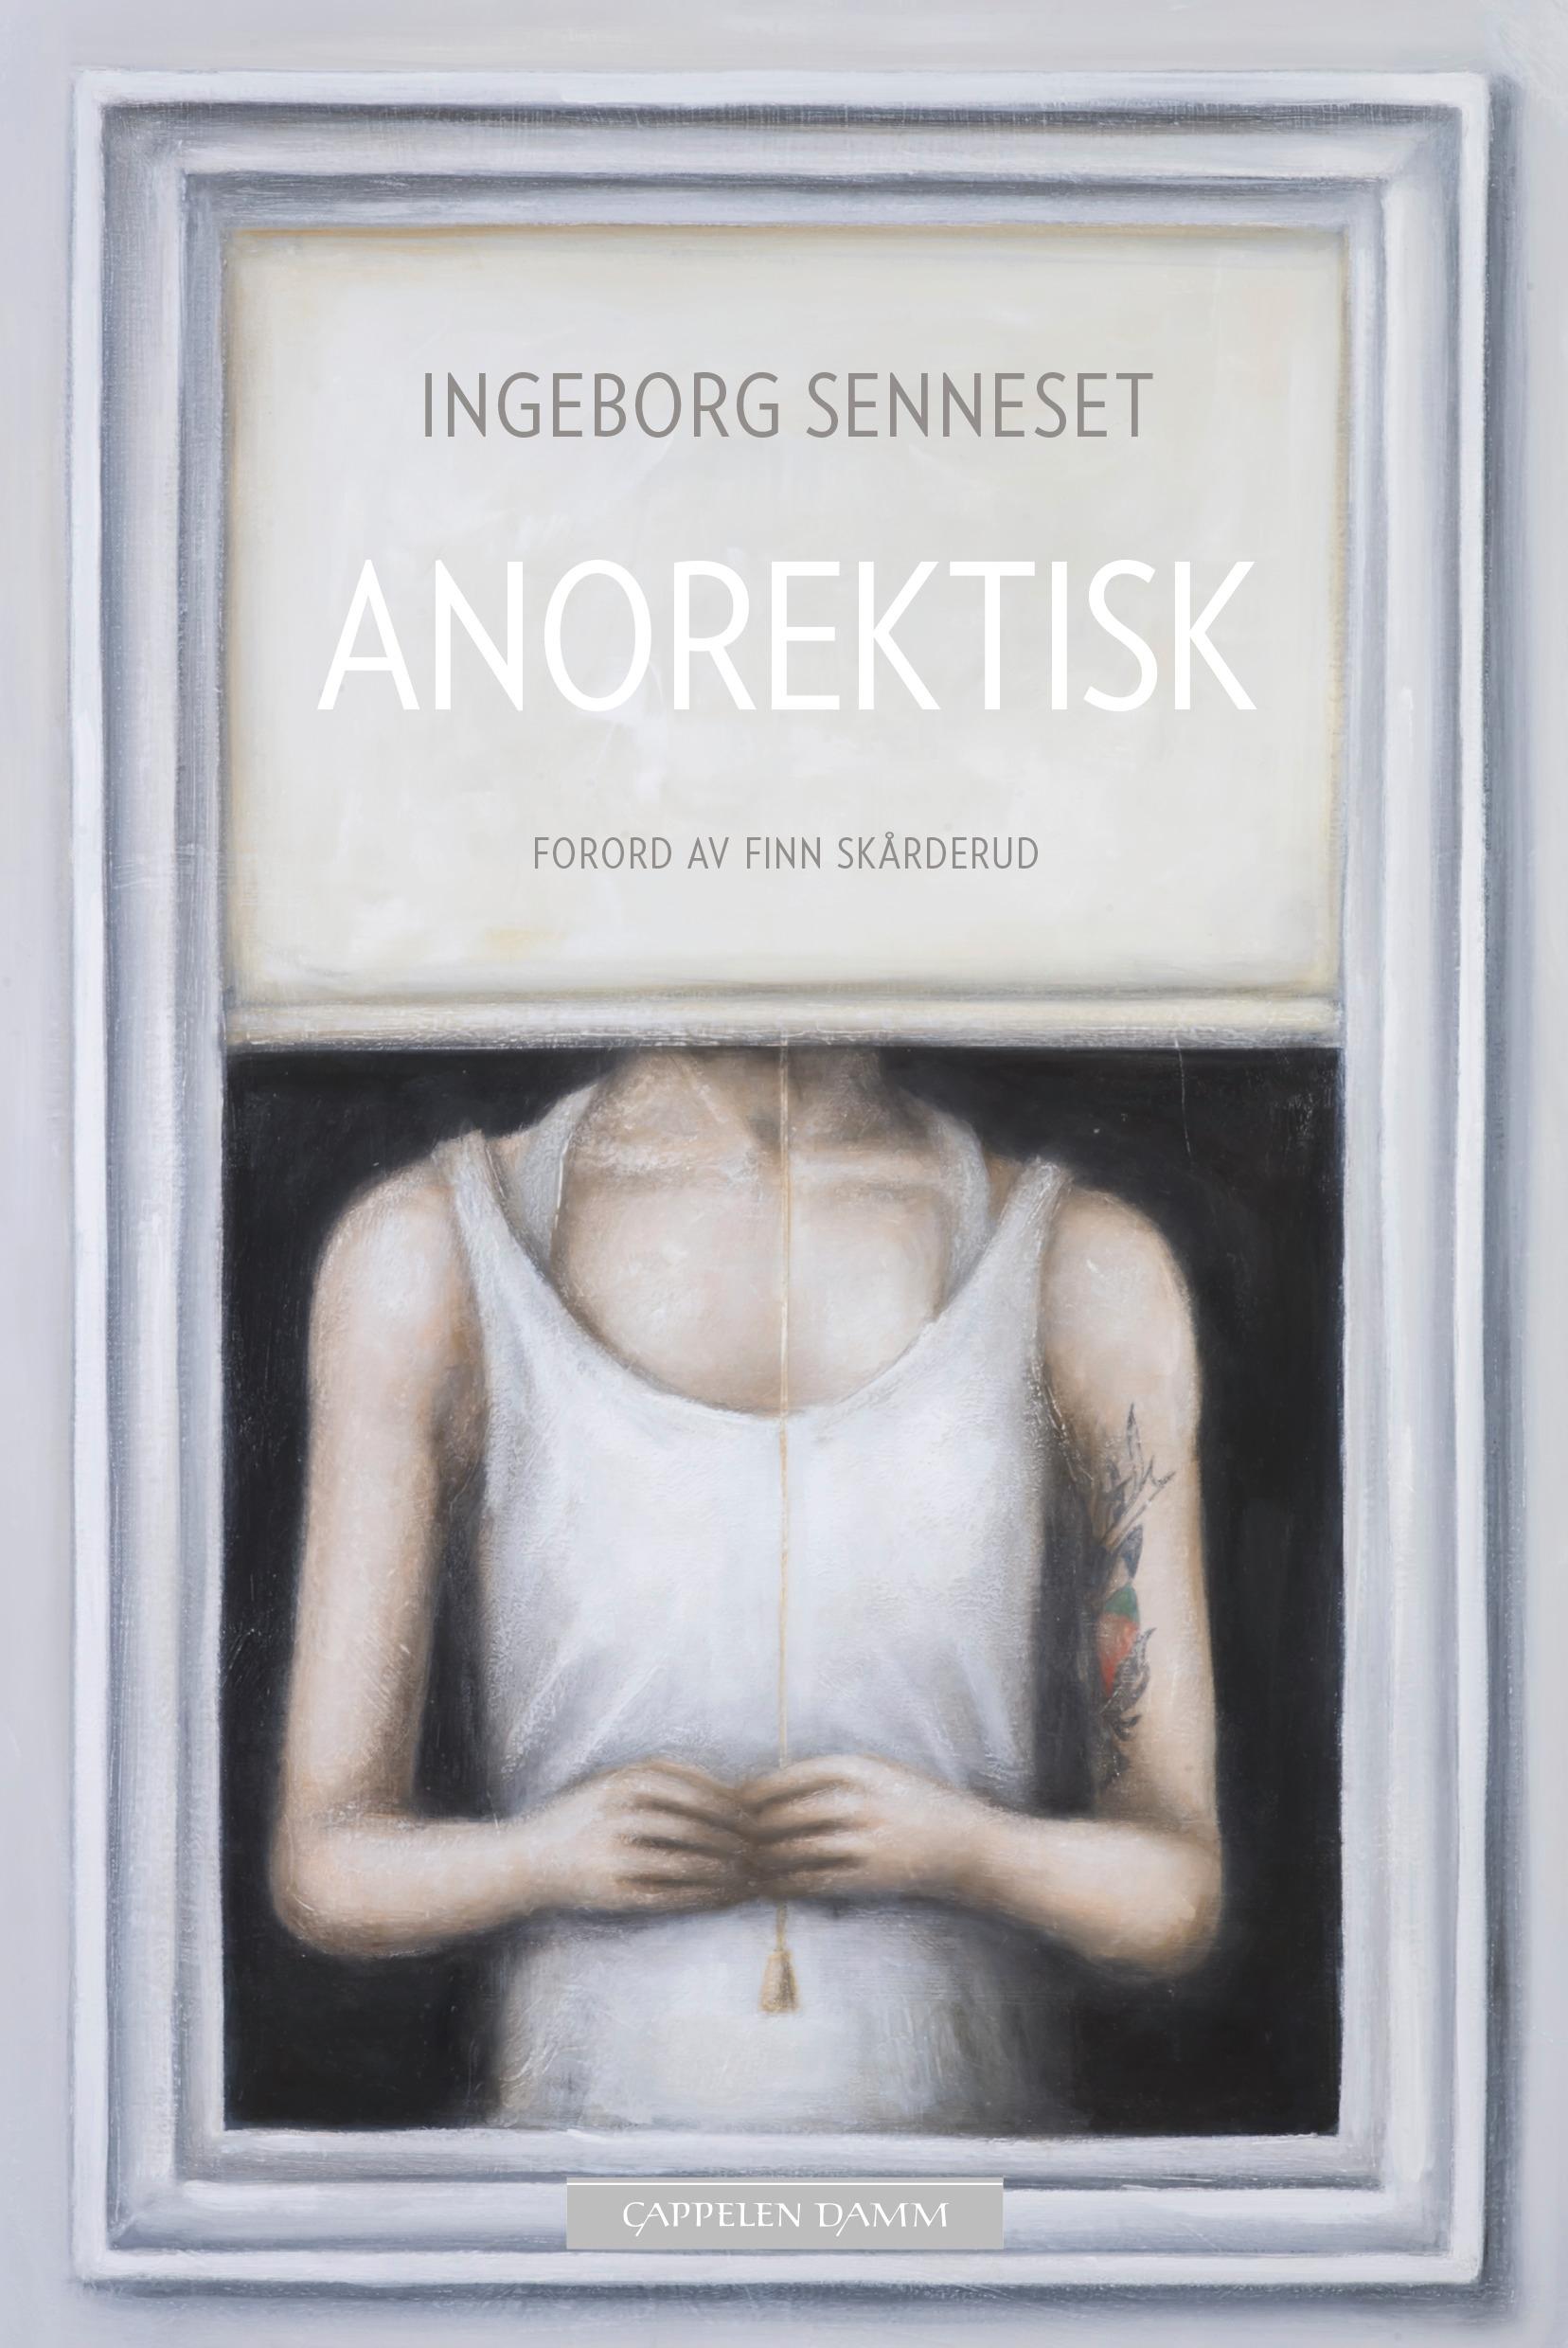 STOR OPPMERKSOMHET: Boken «Anorektisk» av Aftenposten-journalist Ingeborg Senneset har fått stor oppmerksomhet i mediene etter at den ble lansert i april.